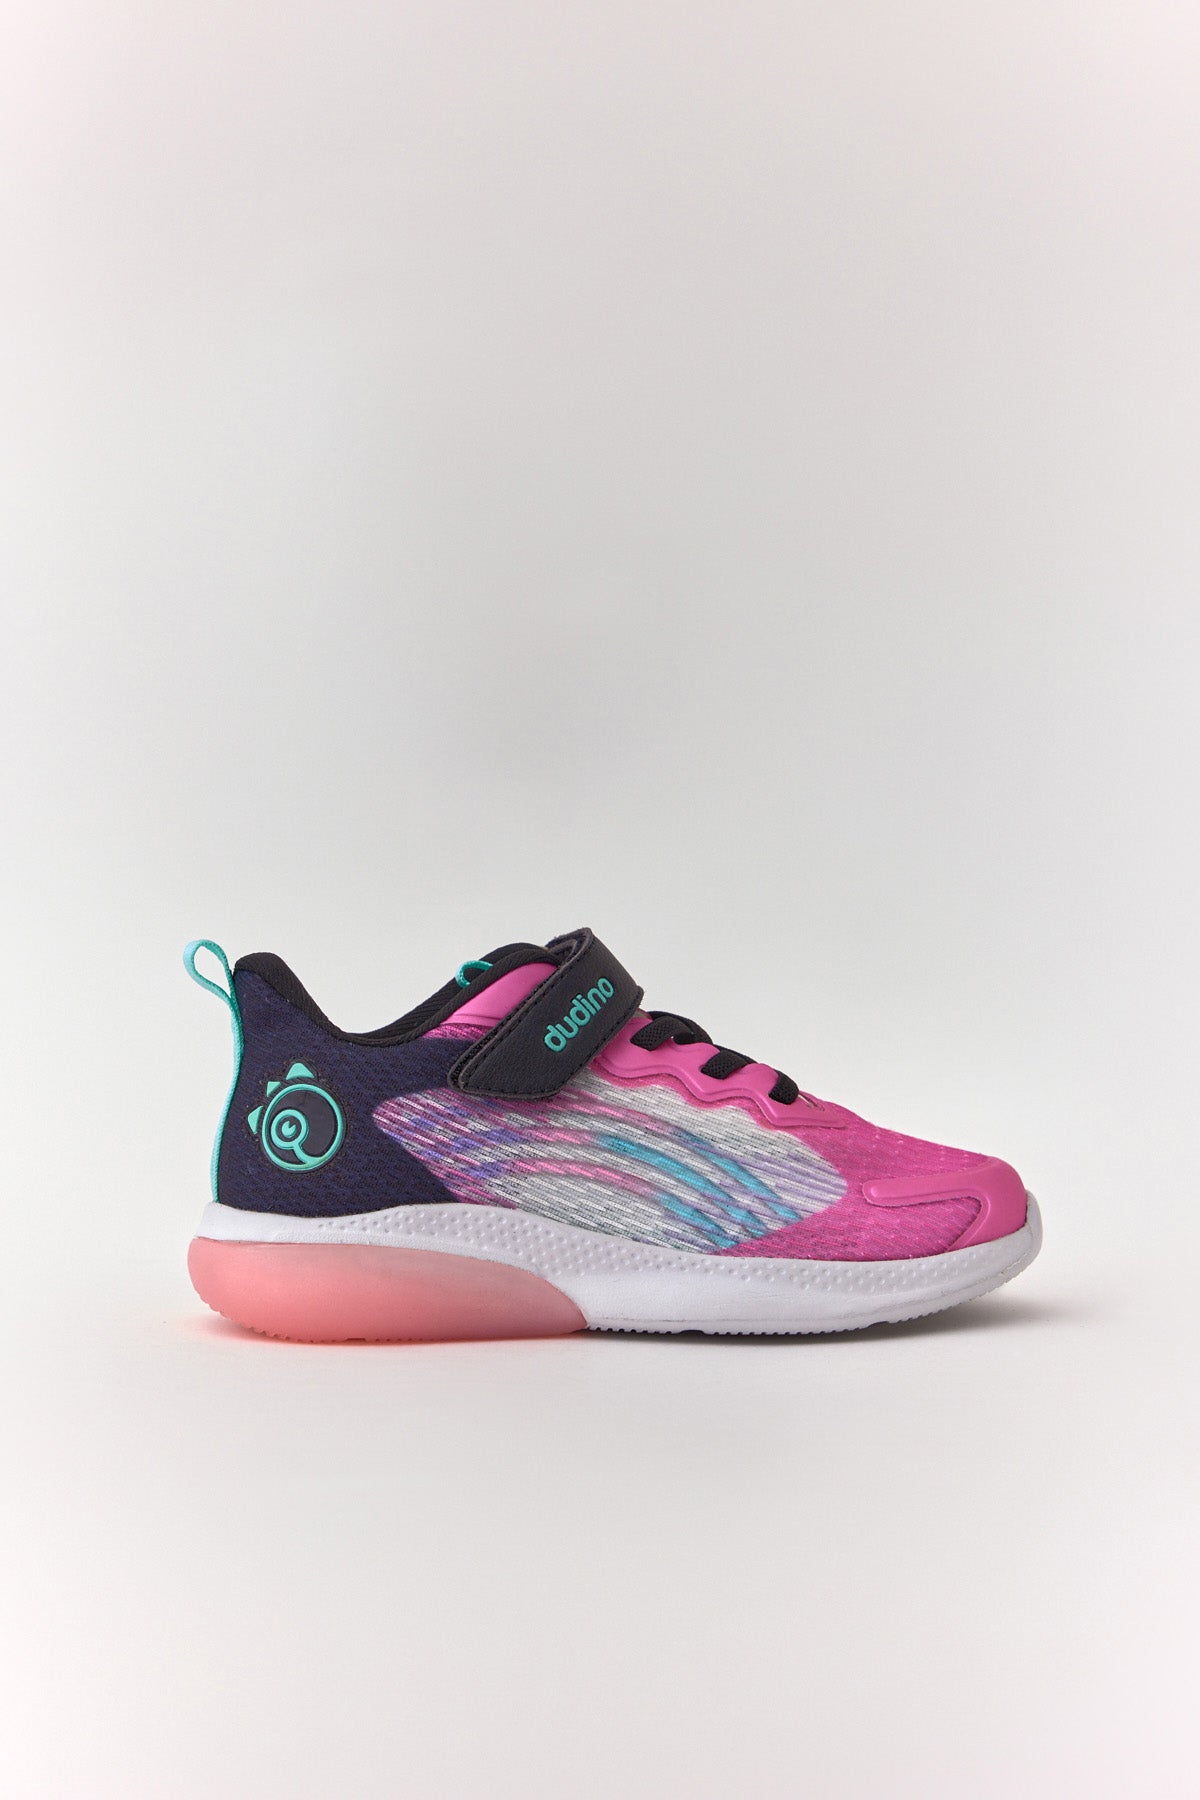 Pembe Kız Ibiza Kolay Giyilebilir Cırt Cırtlı Işıklı Çocuk Sneaker